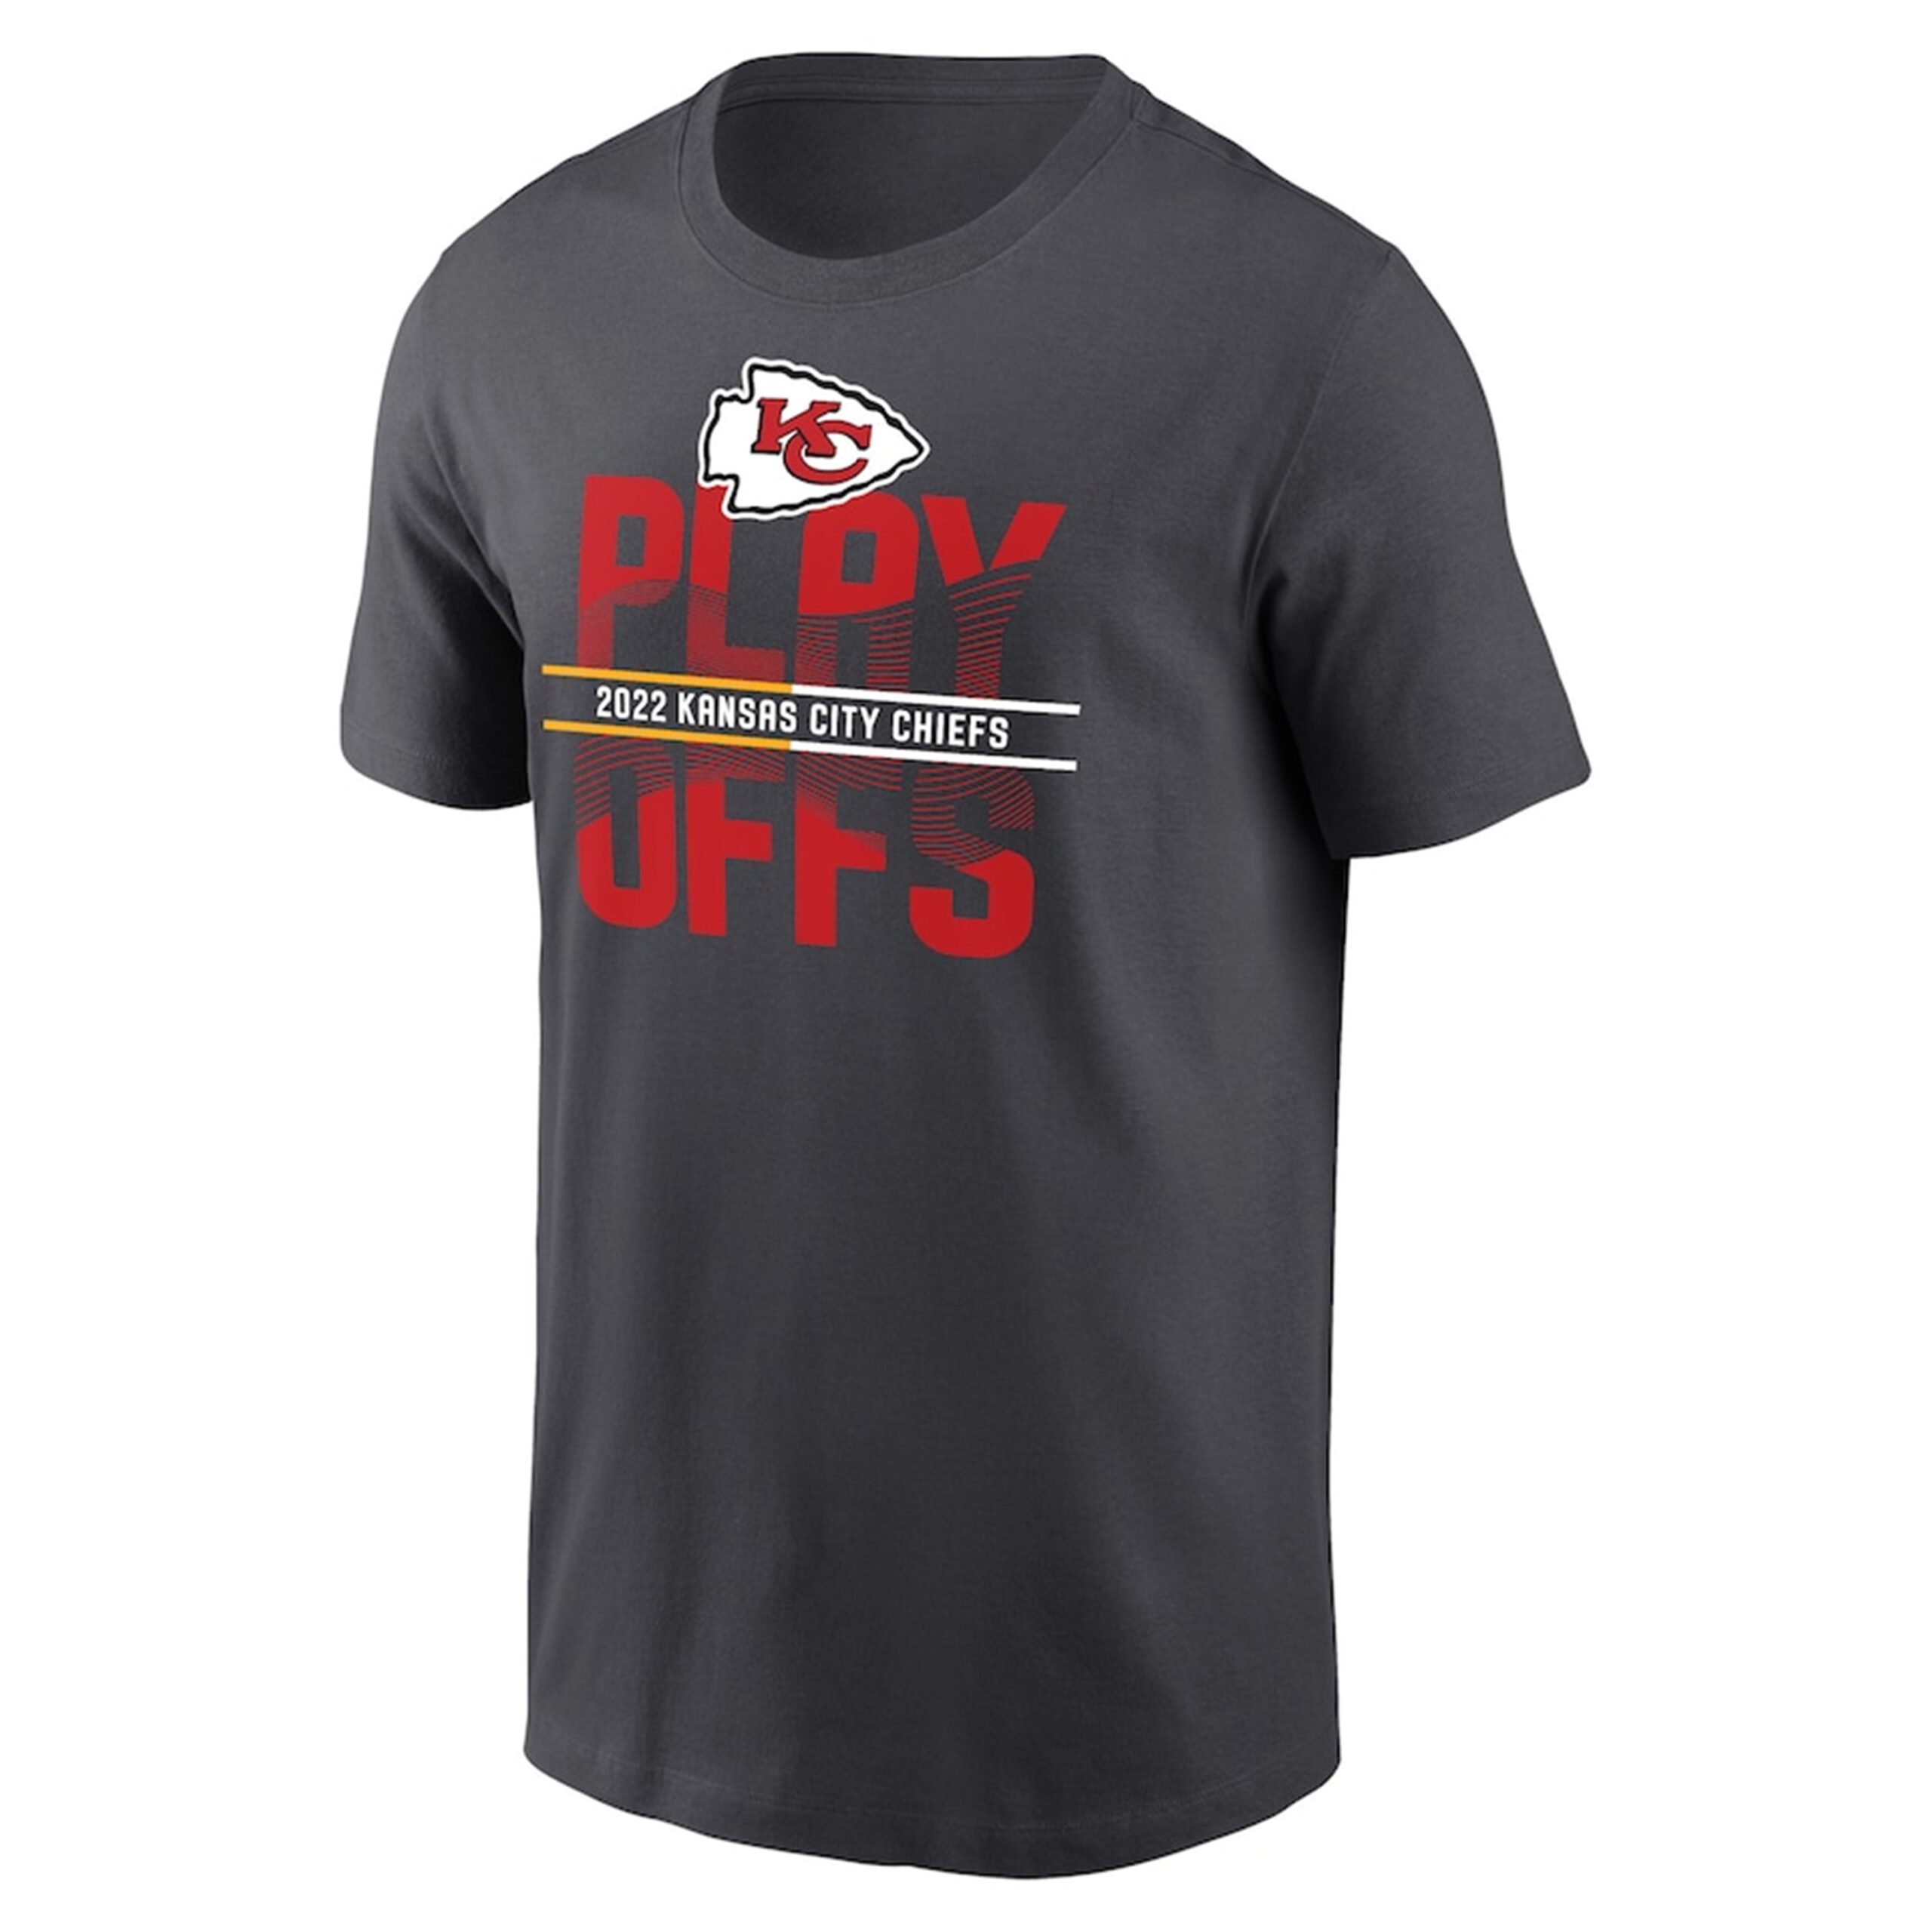 Kansas City Chiefs 2022 NFL Playoffs Tee Shirt - ShirtElephant Office